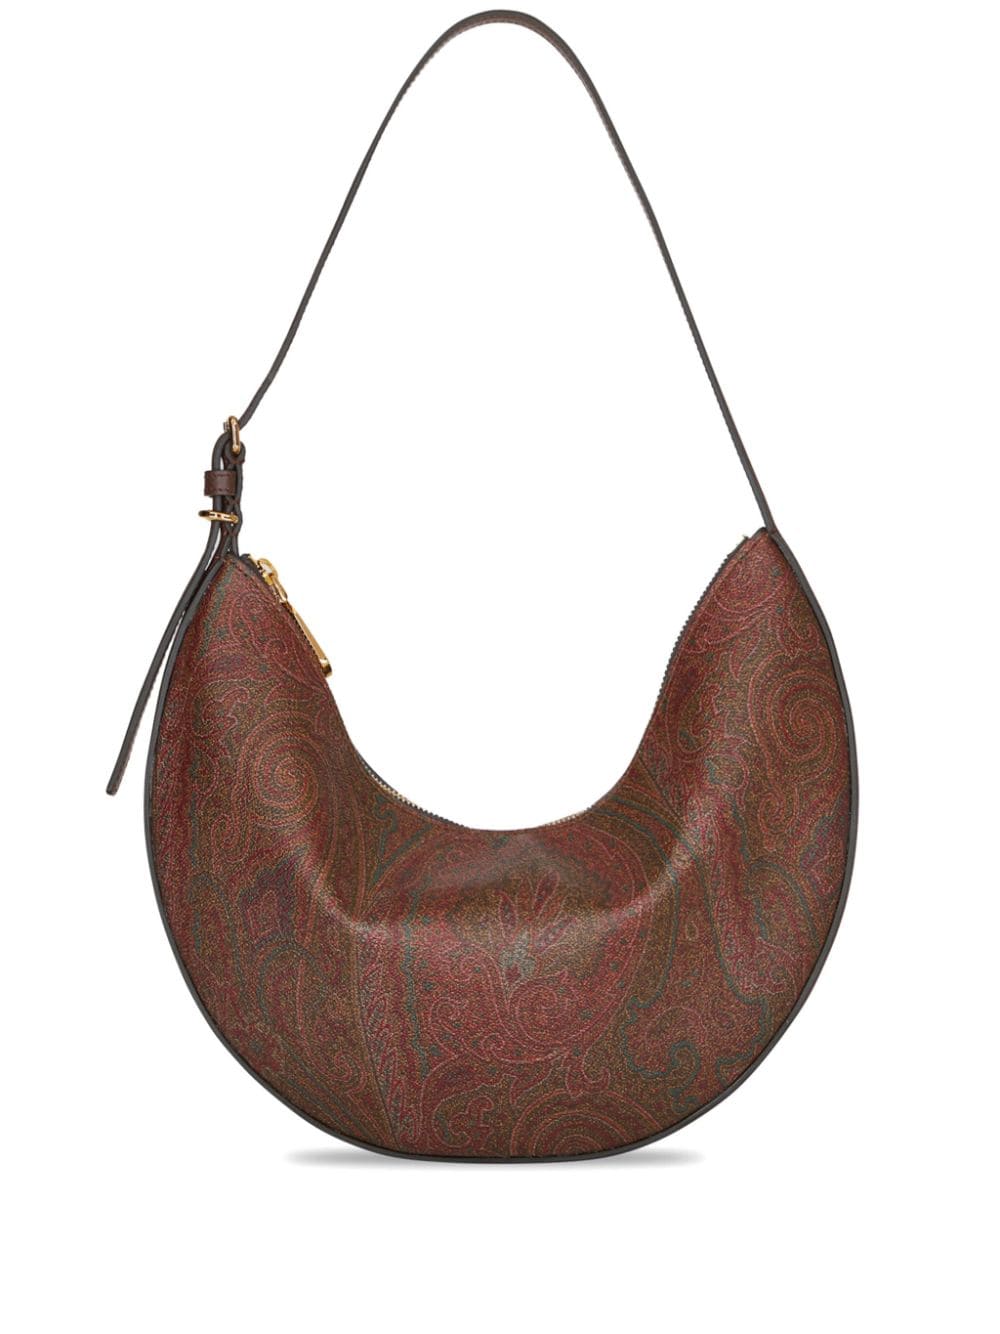 ETRO Brown Medium-Sized Hobo Handbag for Women